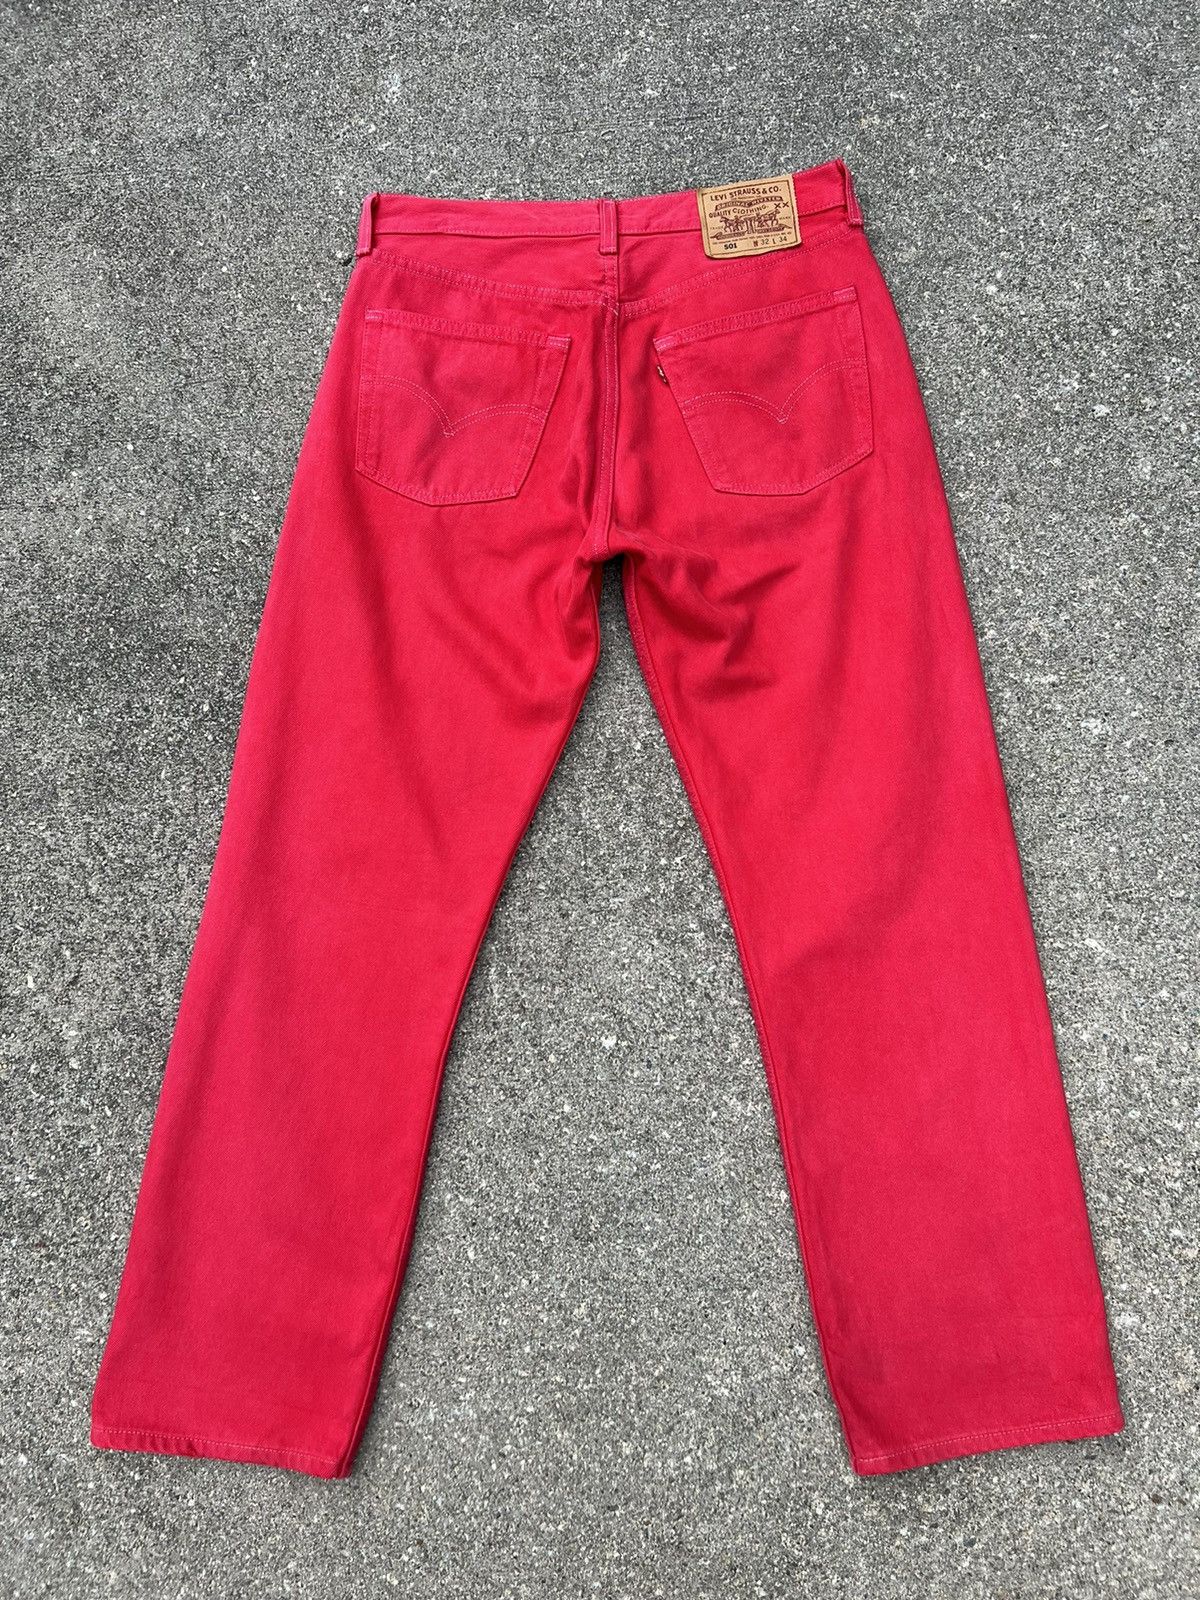 Vintage Vintage 1999 Levi’s 501 Fade Red Denim Jeans Size US 31 - 5 Thumbnail